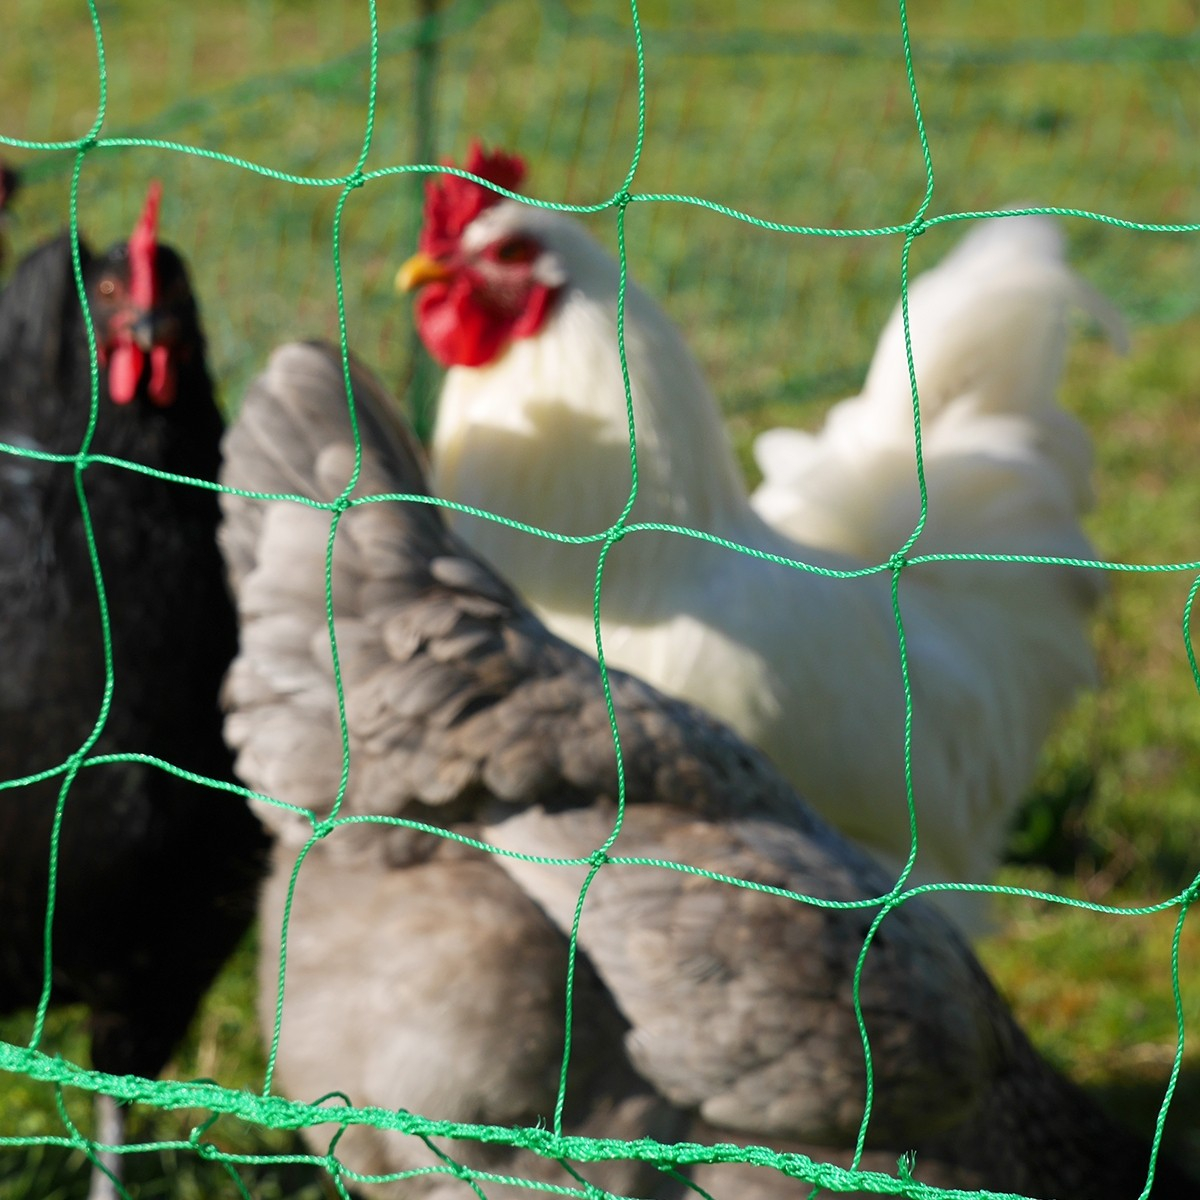 Puerta automática para gallineros: protege a tus gallinas